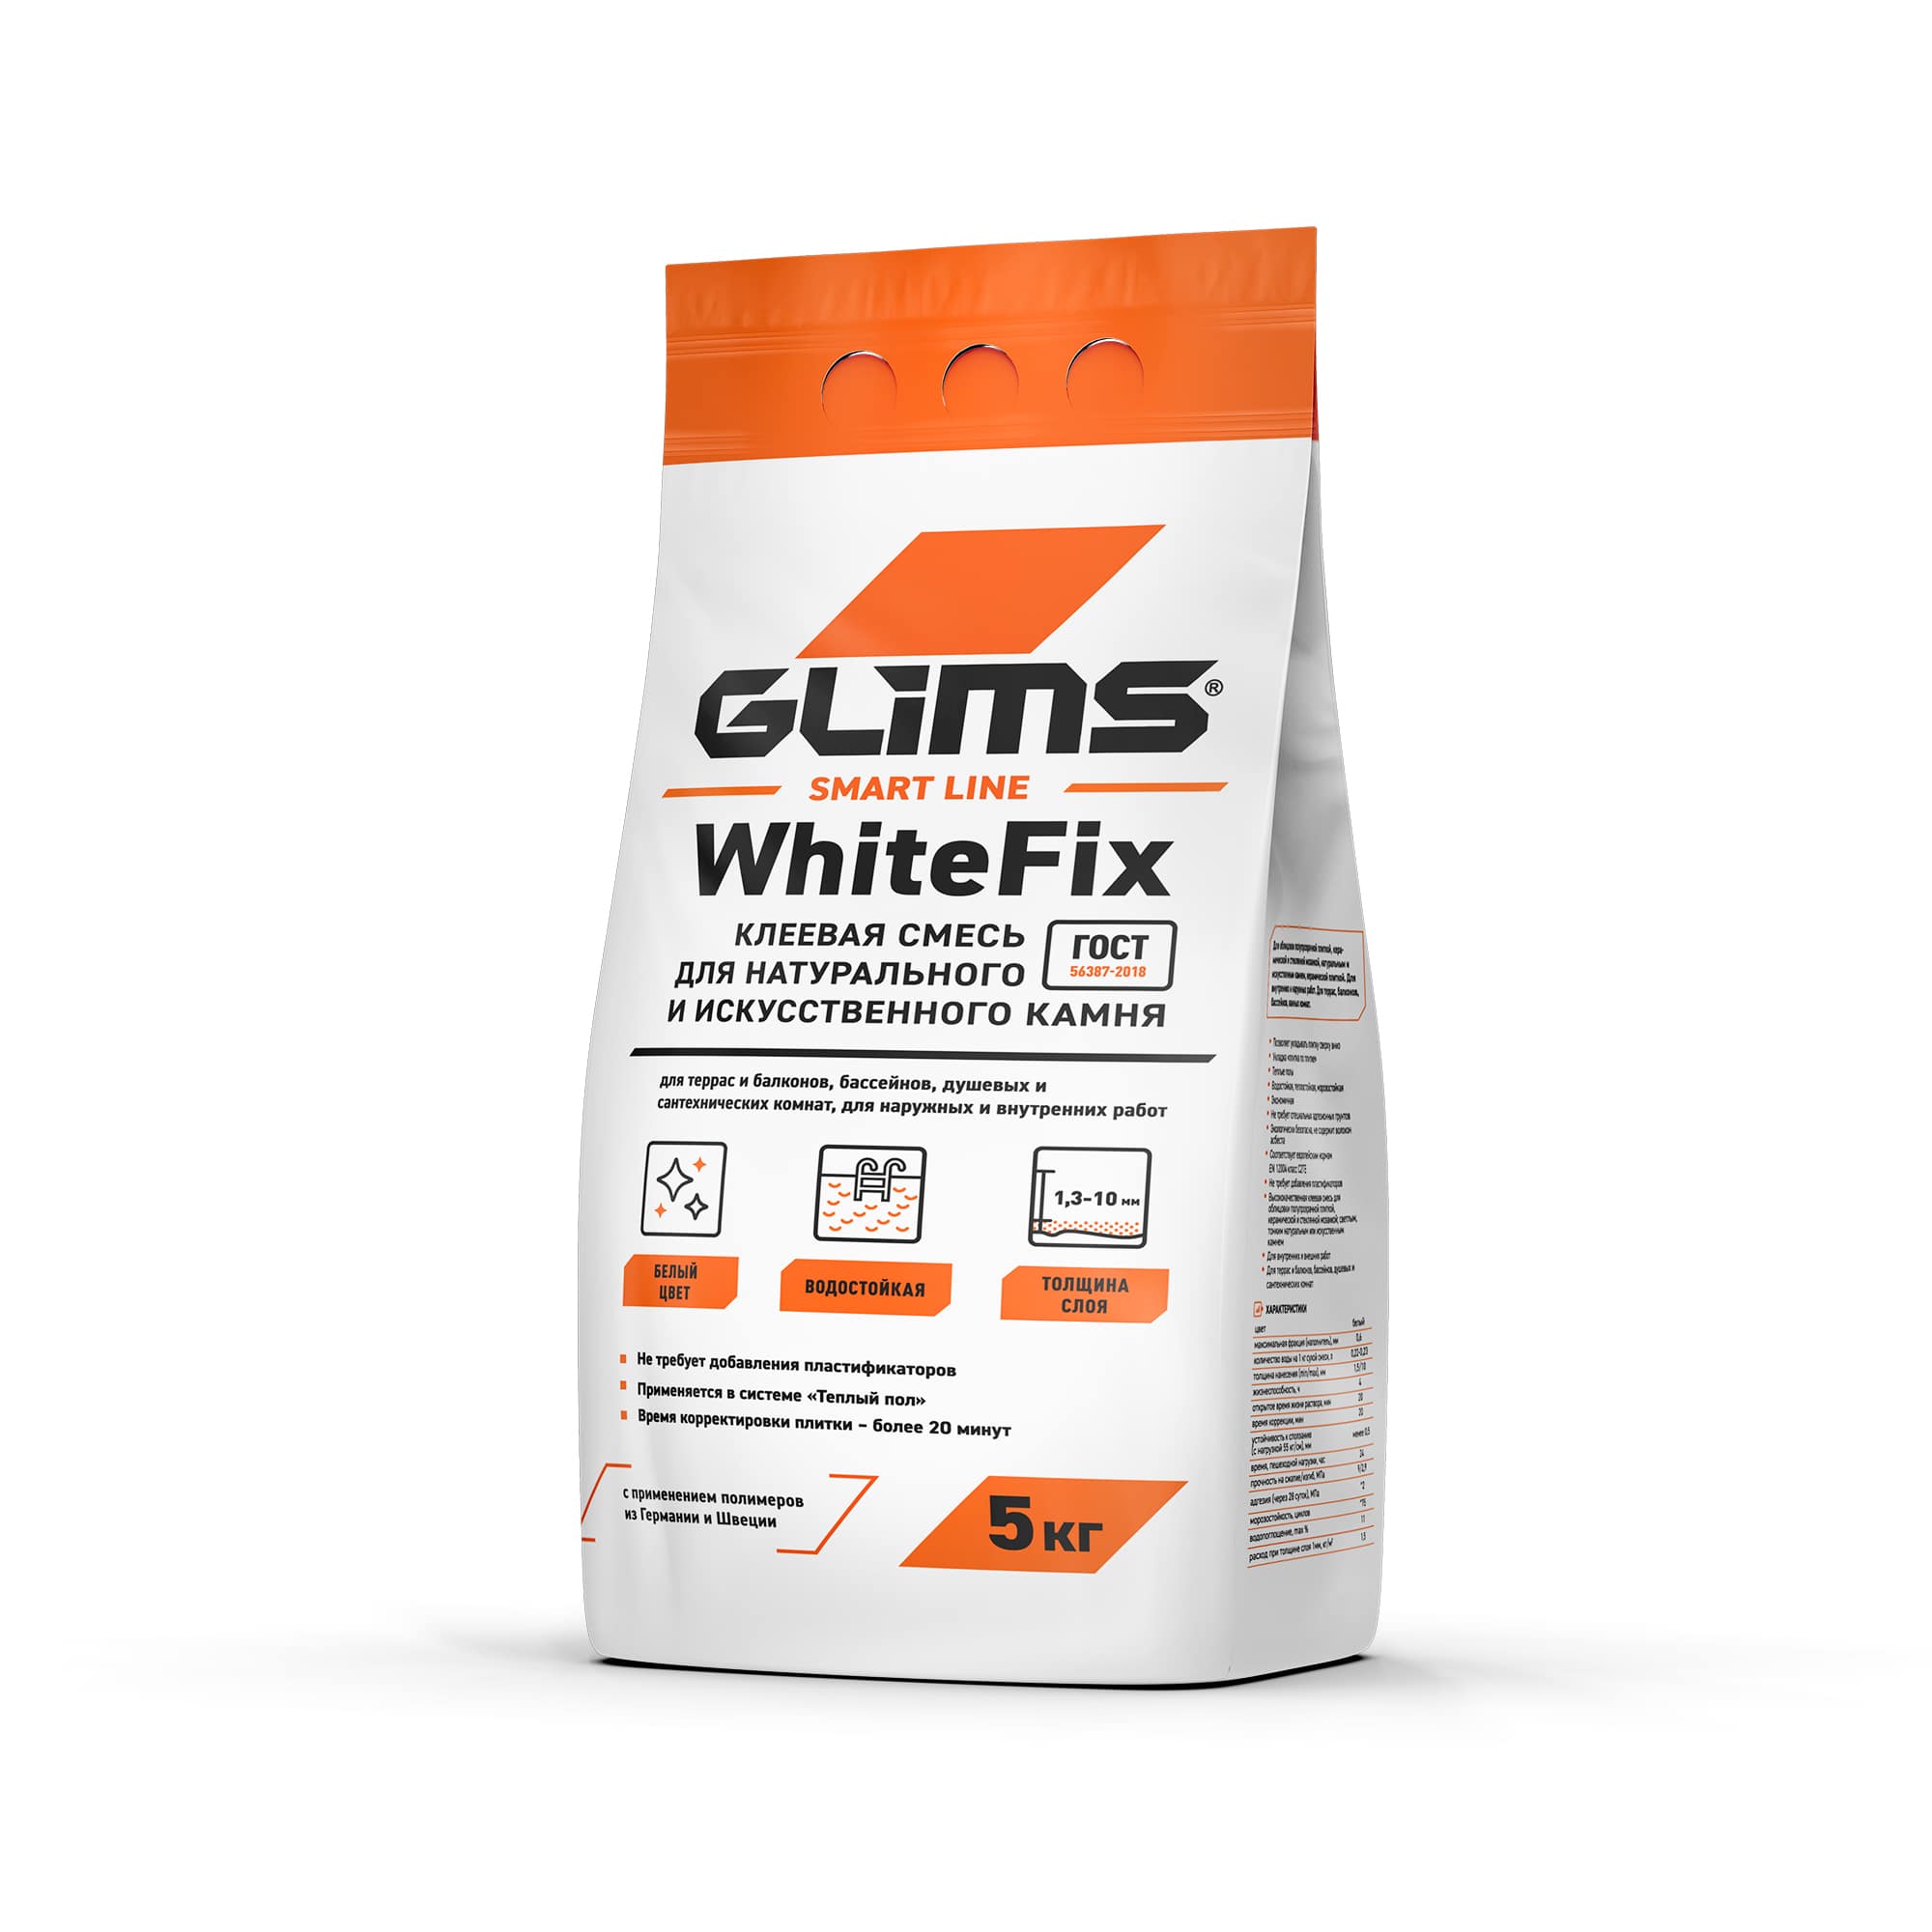 Клей плиточный GLIMS WhiteFix белый, 5 кг